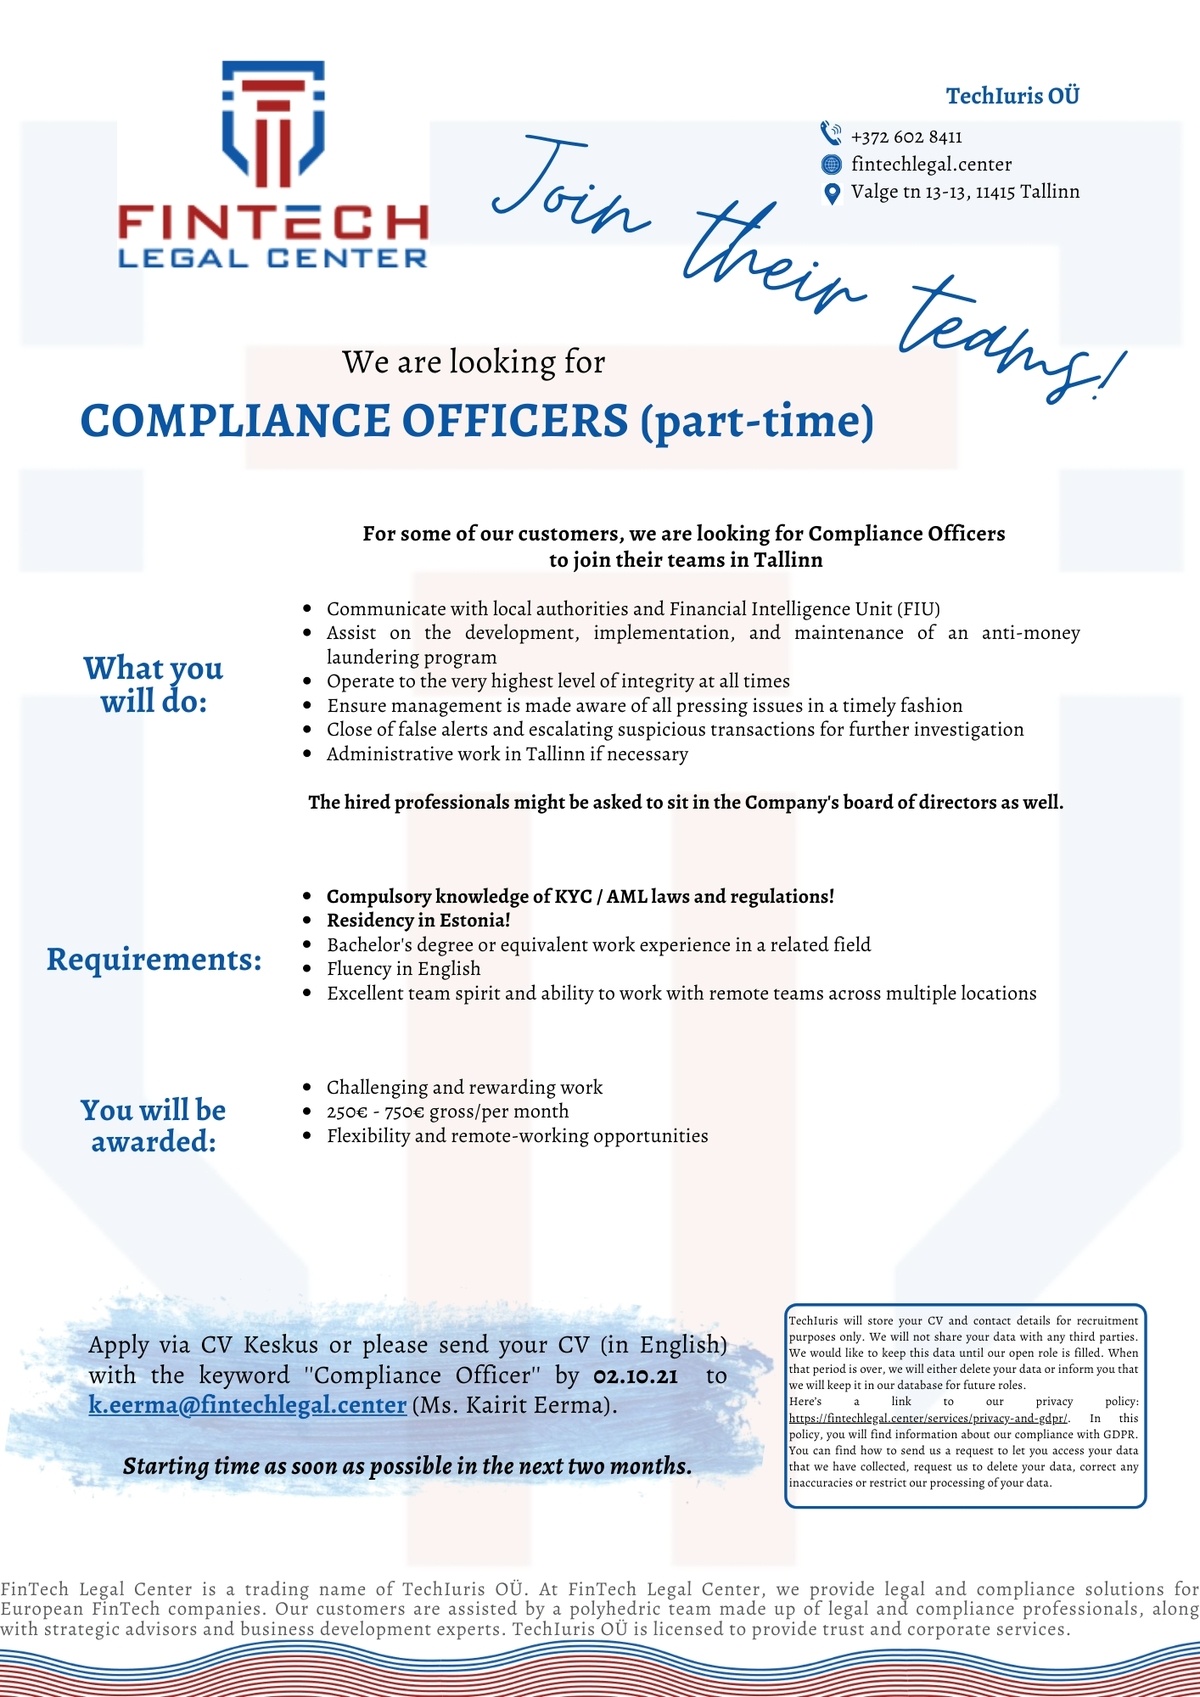 TechIuris OÜ Compliance Officers (part-time)